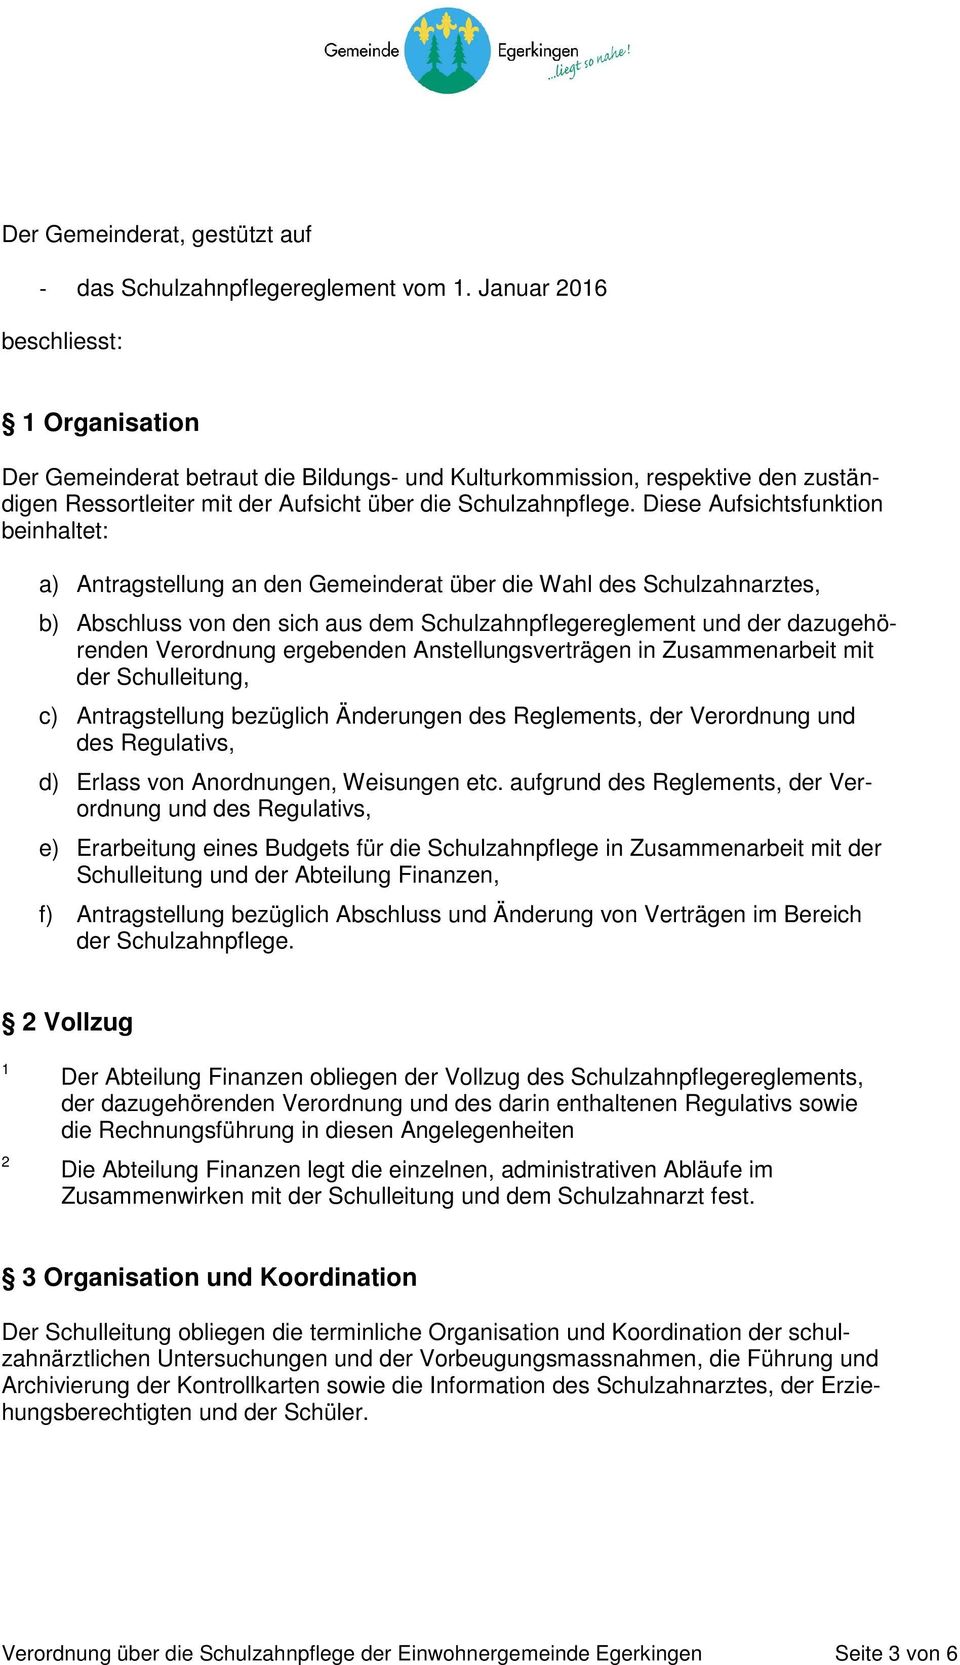 Diese Aufsichtsfunktion beinhaltet: a) Antragstellung an den Gemeinderat über die Wahl des Schulzahnarztes, b) Abschluss von den sich aus dem Schulzahnpflegereglement und der dazugehörenden